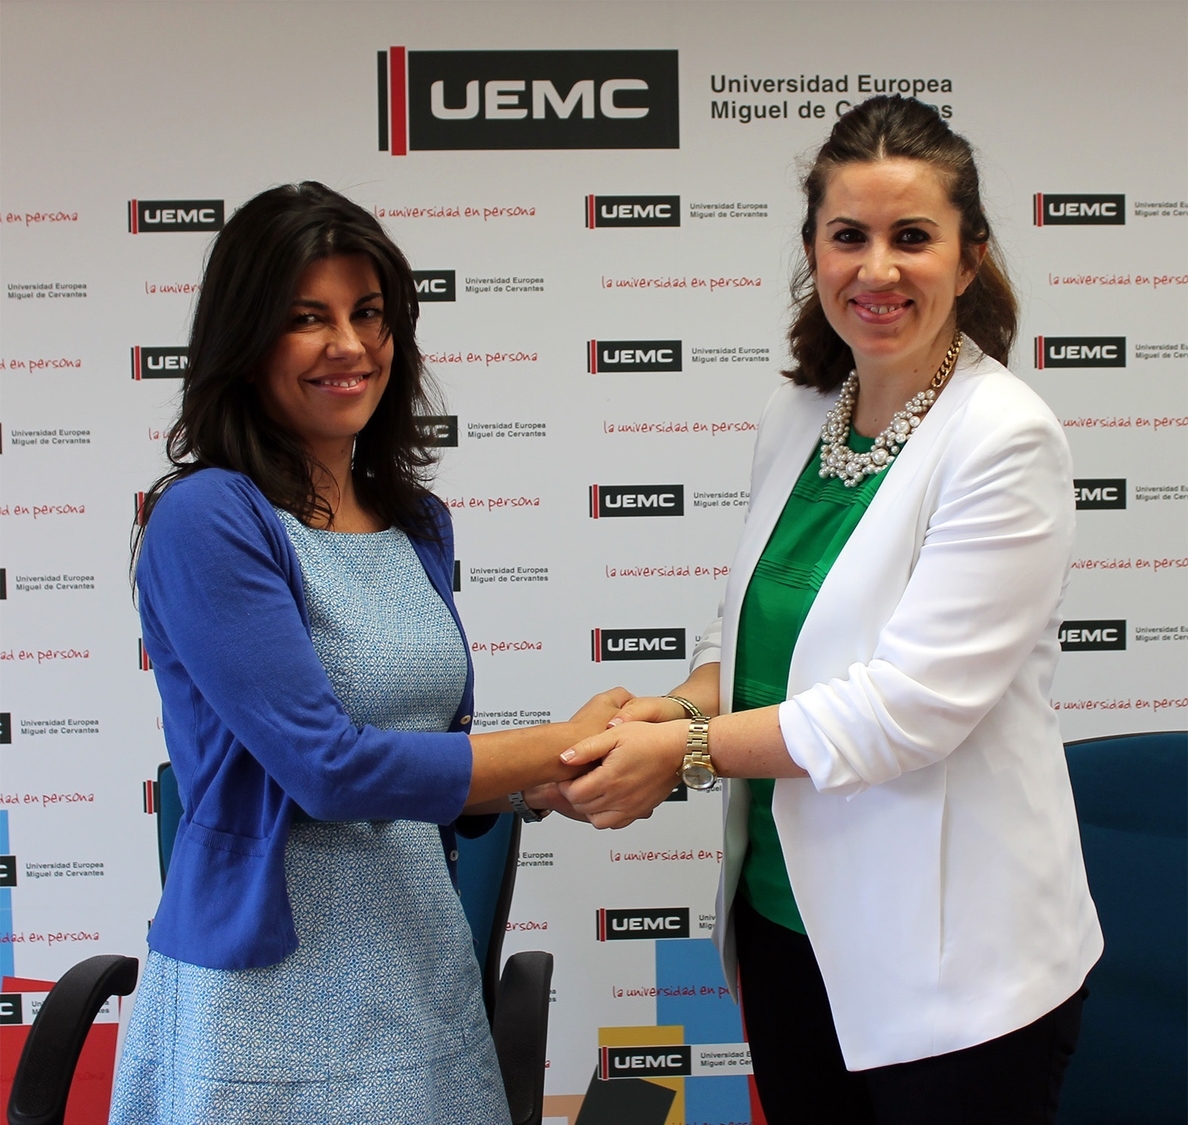 La UEMC y Sigma Dos colaborarán en estudios de opinión pública e investigaciones de mercado